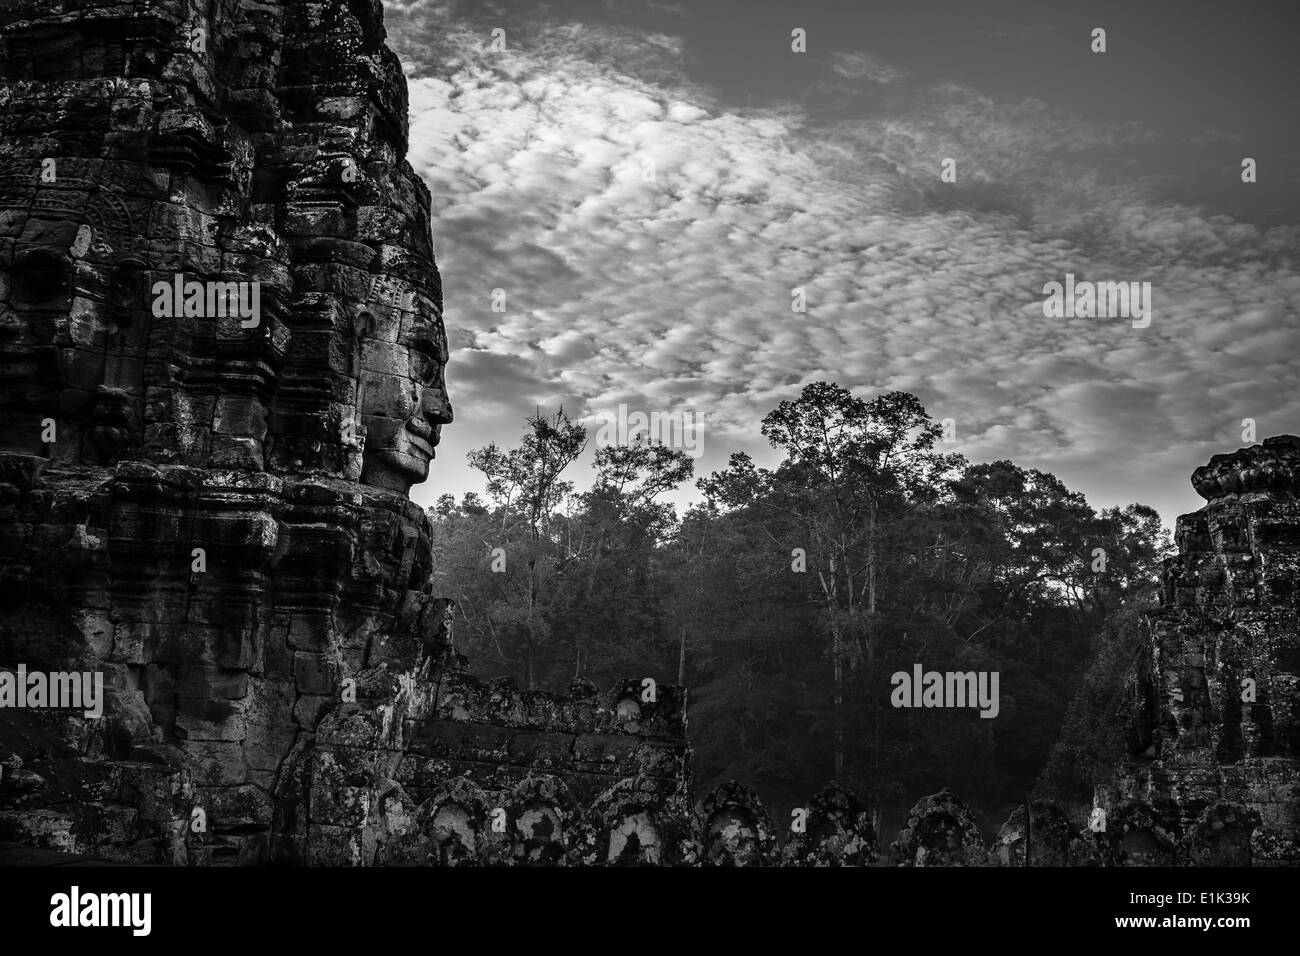 Il Bayon è un tempio di Angkor Thom, Angkor, Siem Reap, Cambogia. La sua caratteristica fondamentale sono le 216 gigantesca pietra volti sorridenti. Foto Stock